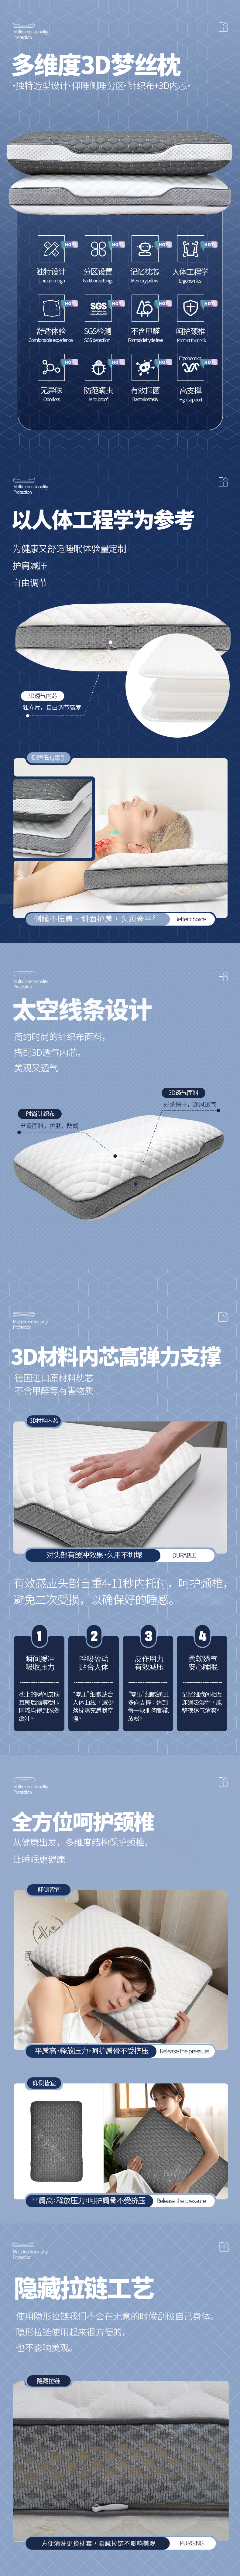 3D梦丝枕.jpg